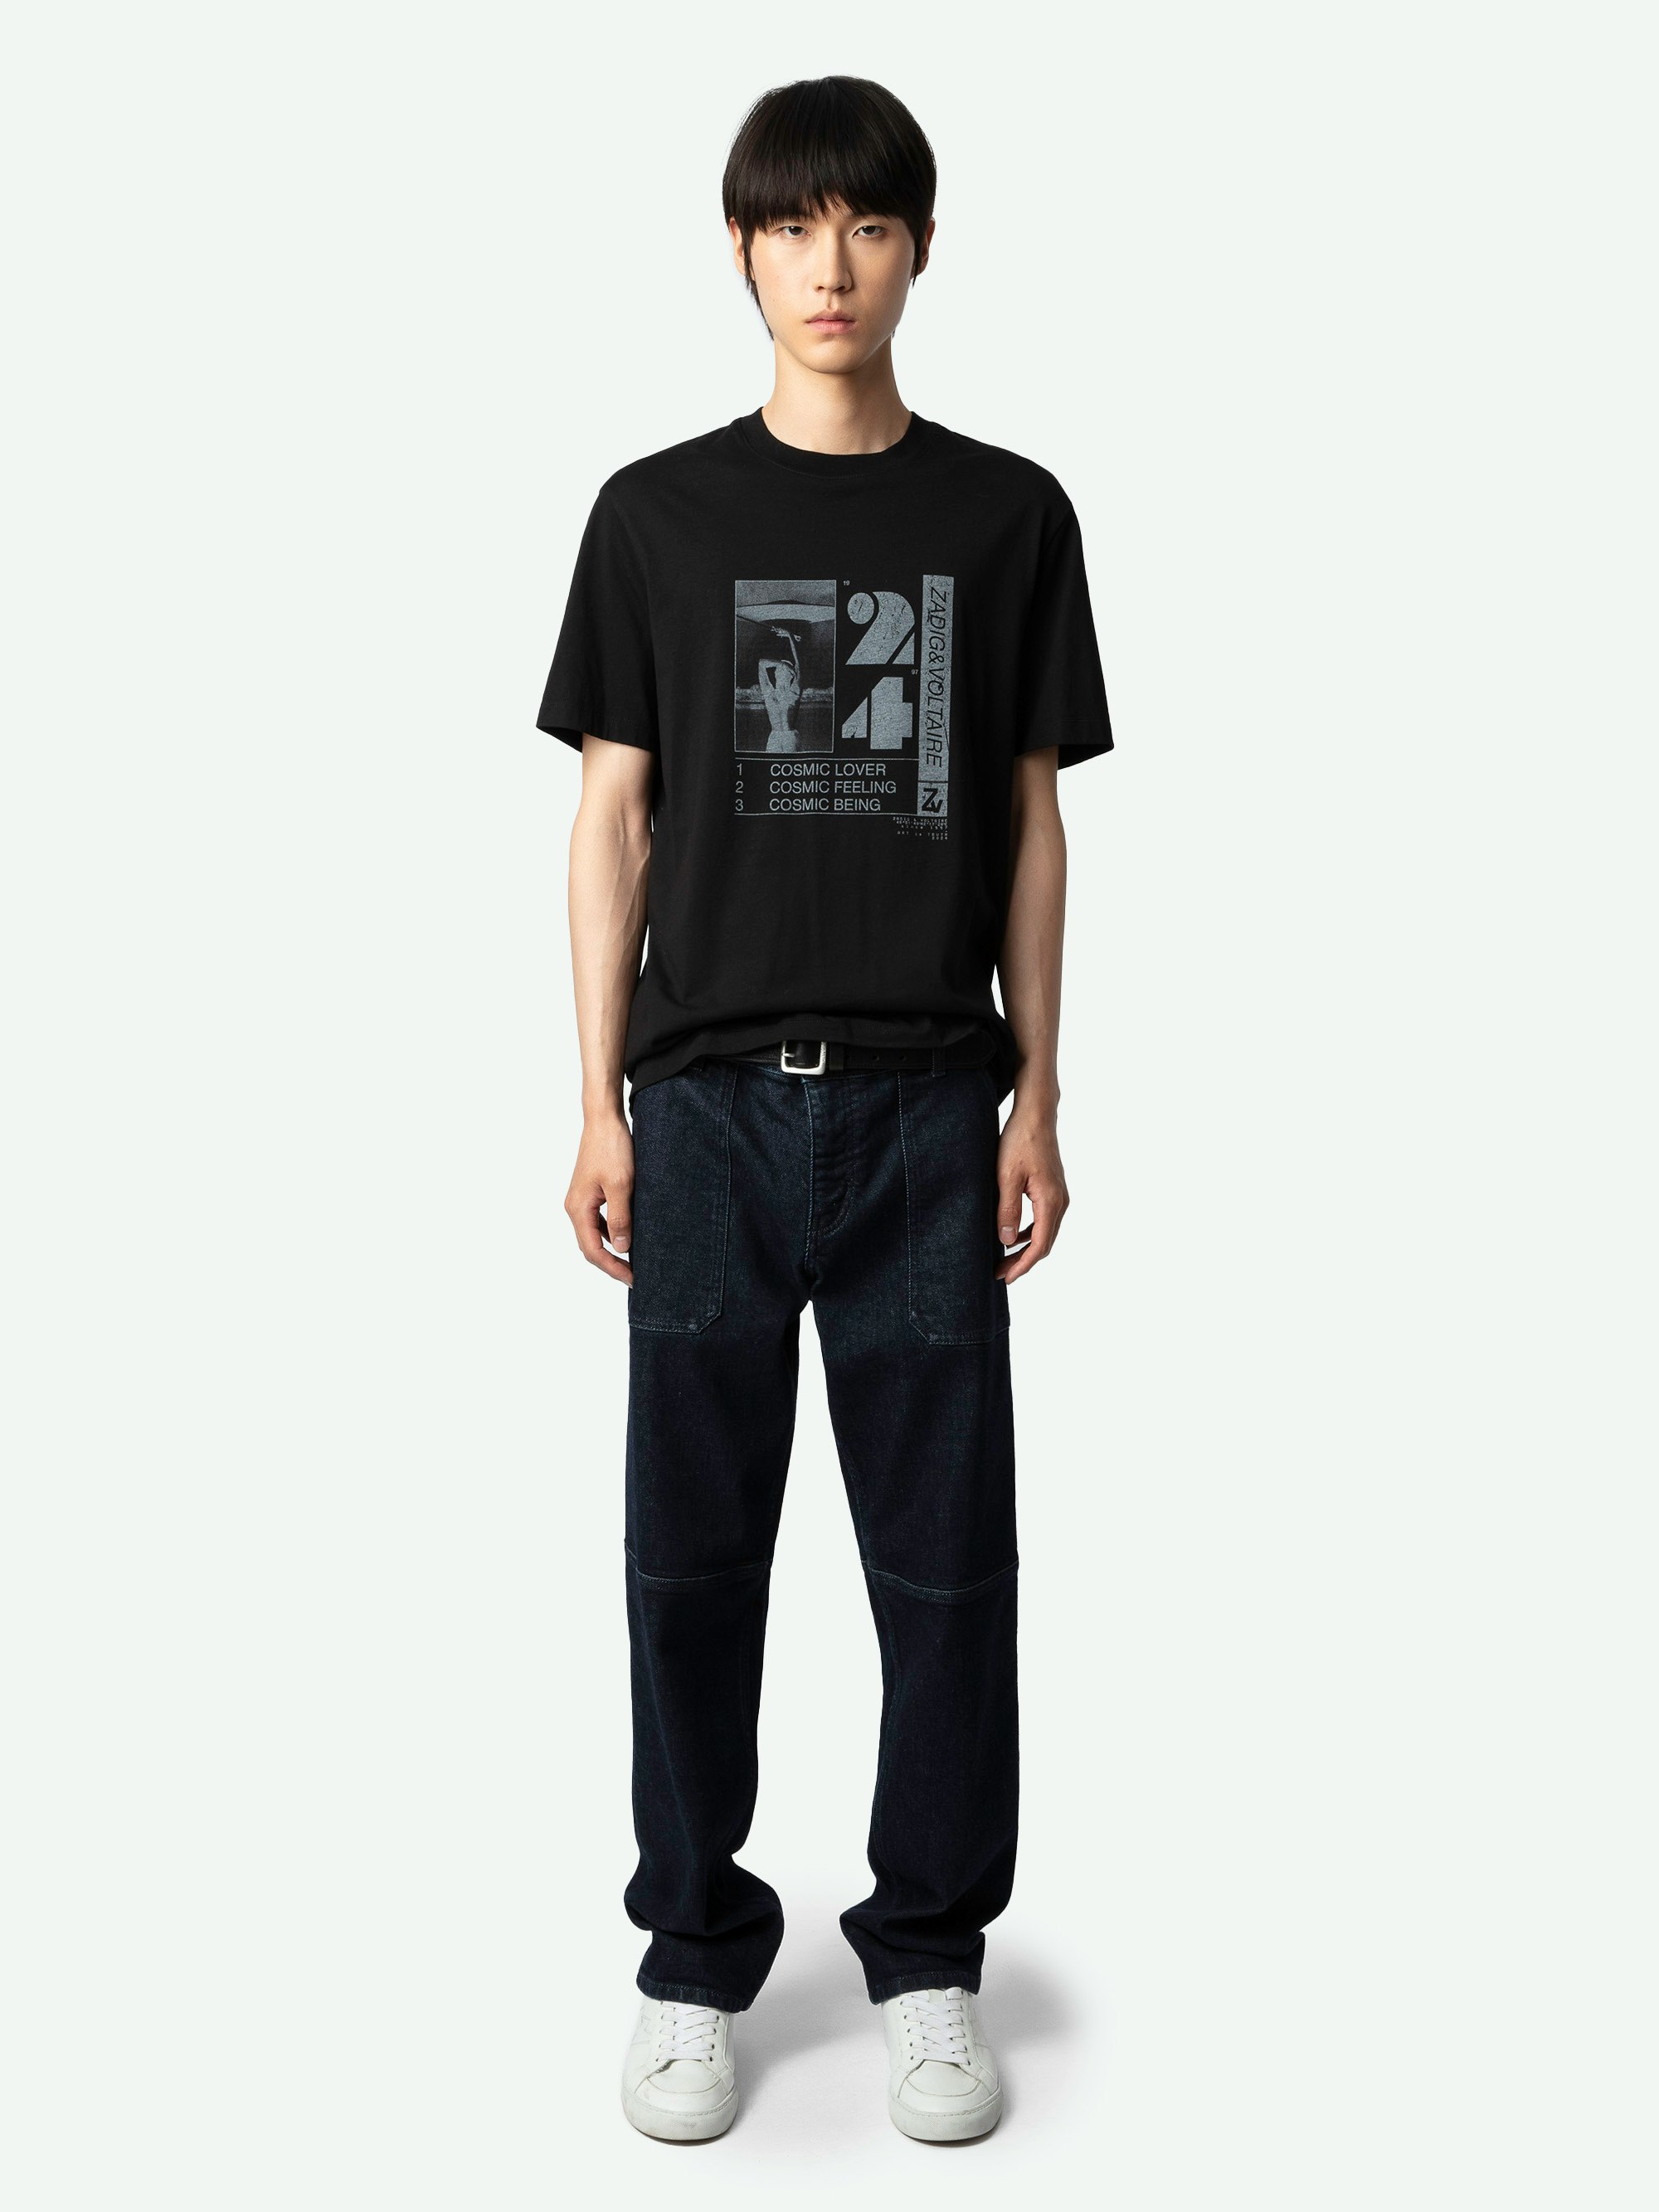 T-Shirt Ted Fotoprint - Kurzärmeliges, schwarzes T-Shirt aus Bio-Baumwolle mit Cosmic-Fotoprint auf der Vorderseite.